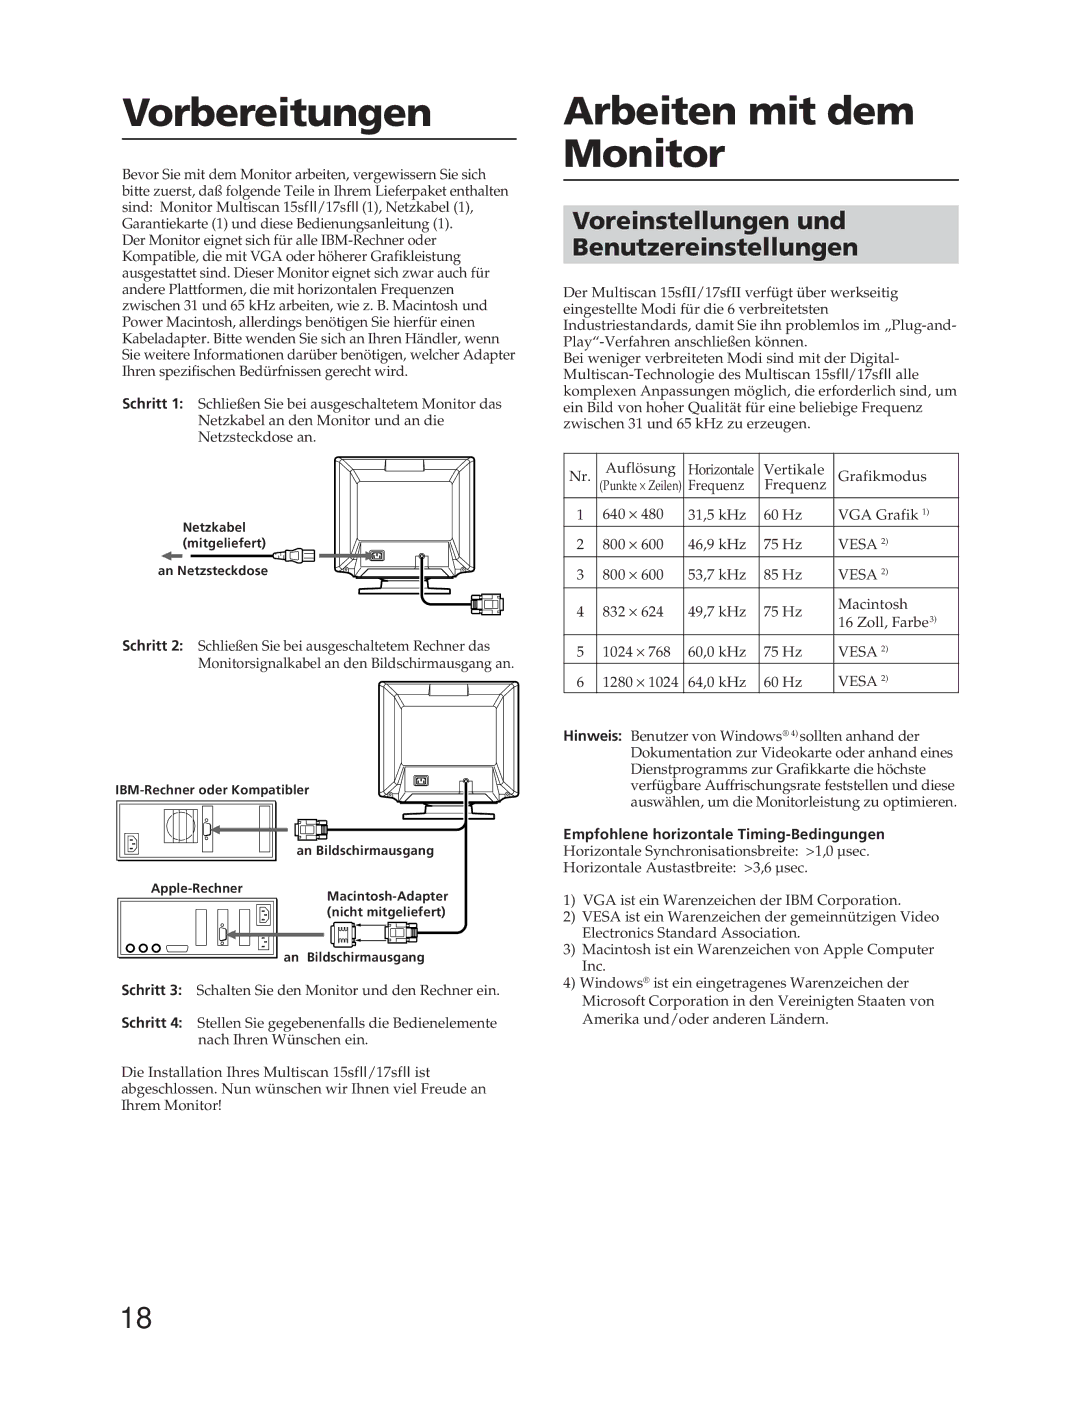 Sony CPD-17SF2T, CPD-15SF2T manual Vorbereitungen, Arbeiten mit dem Monitor, Voreinstellungen und Benutzereinstellungen 